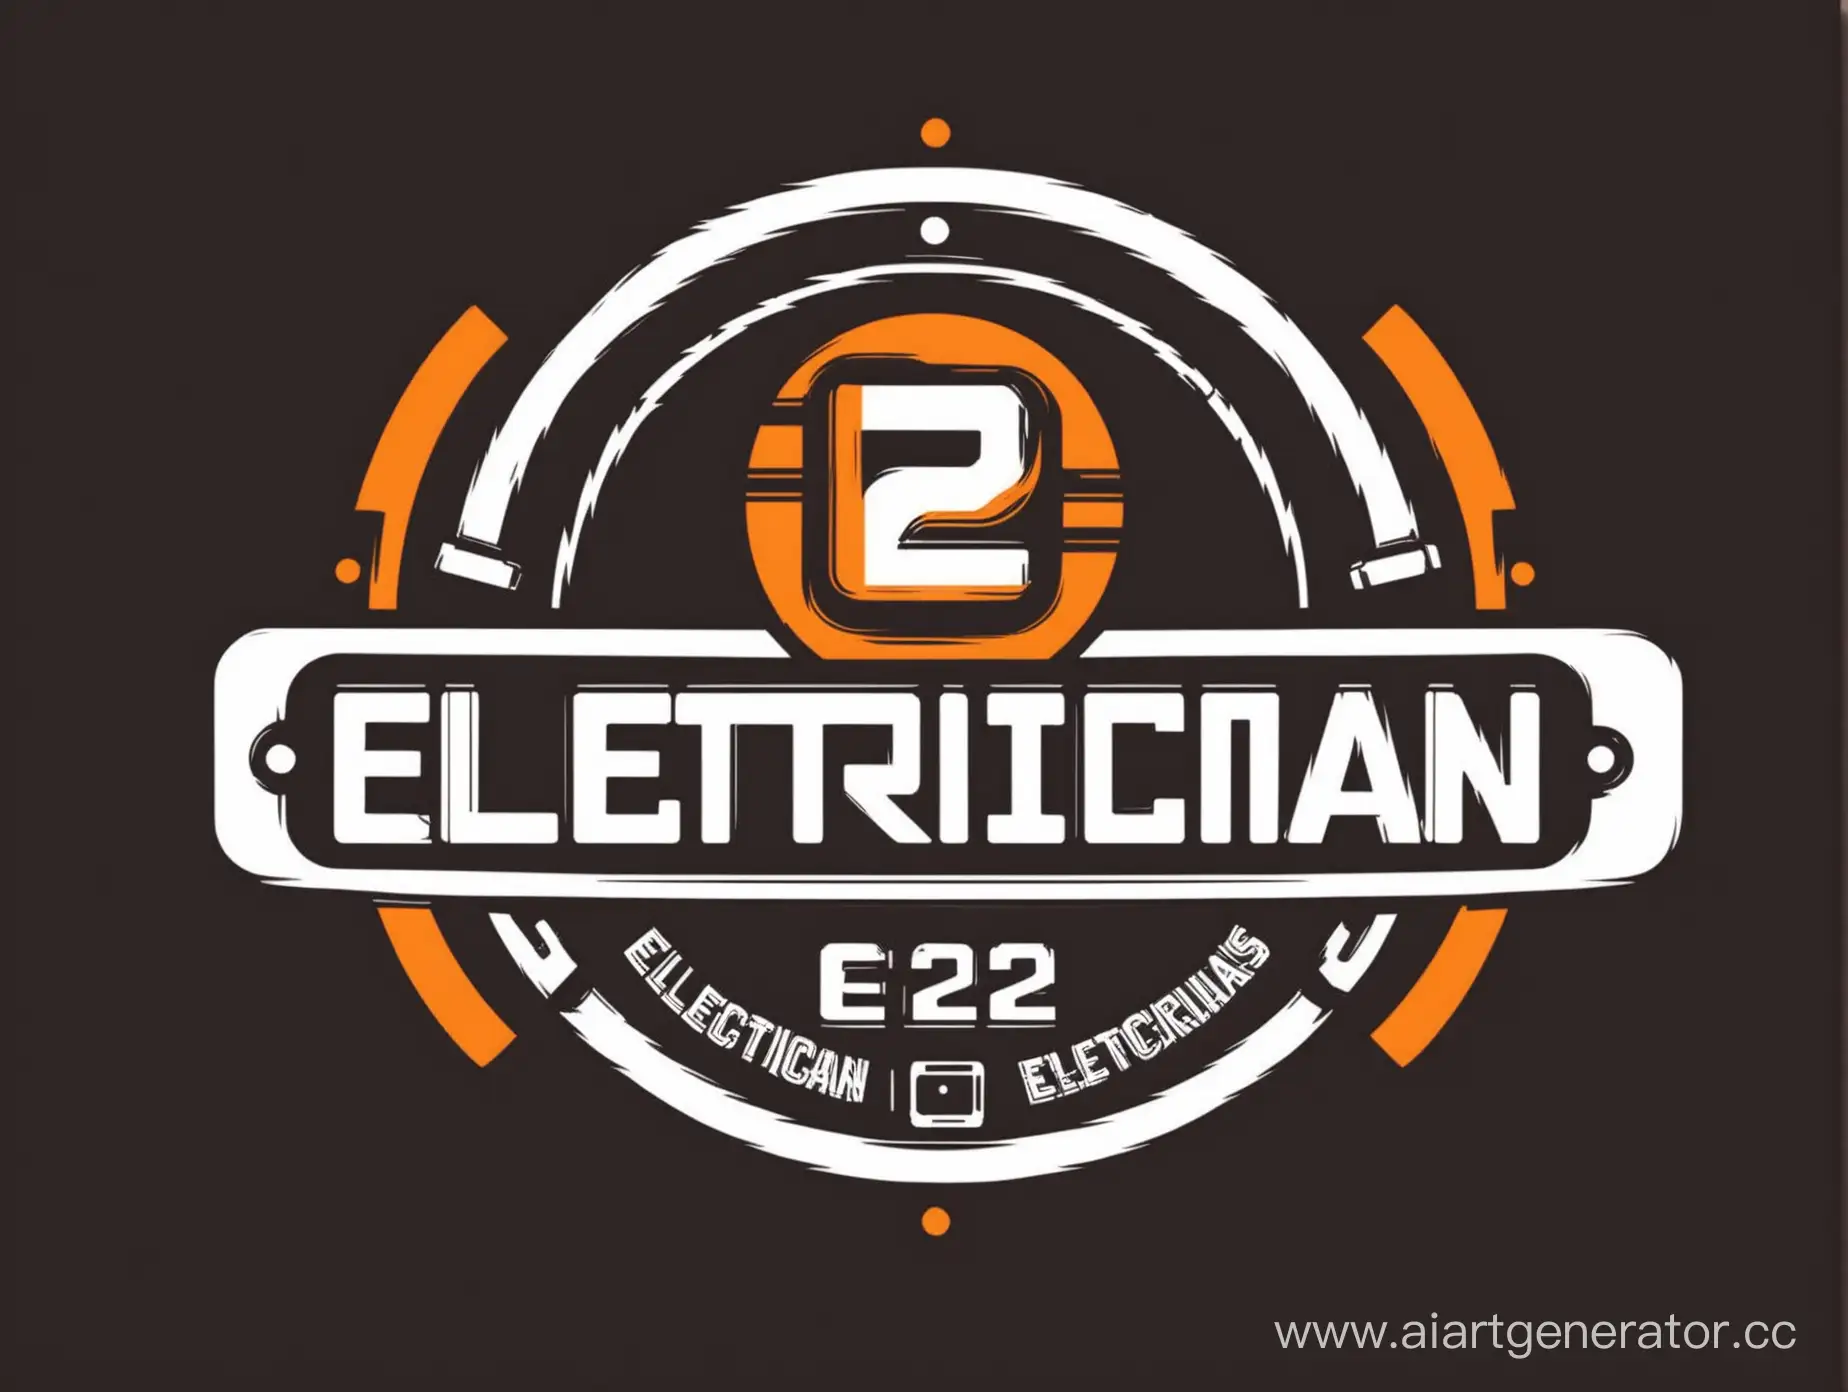 Логотип для группы электриков Э-22

